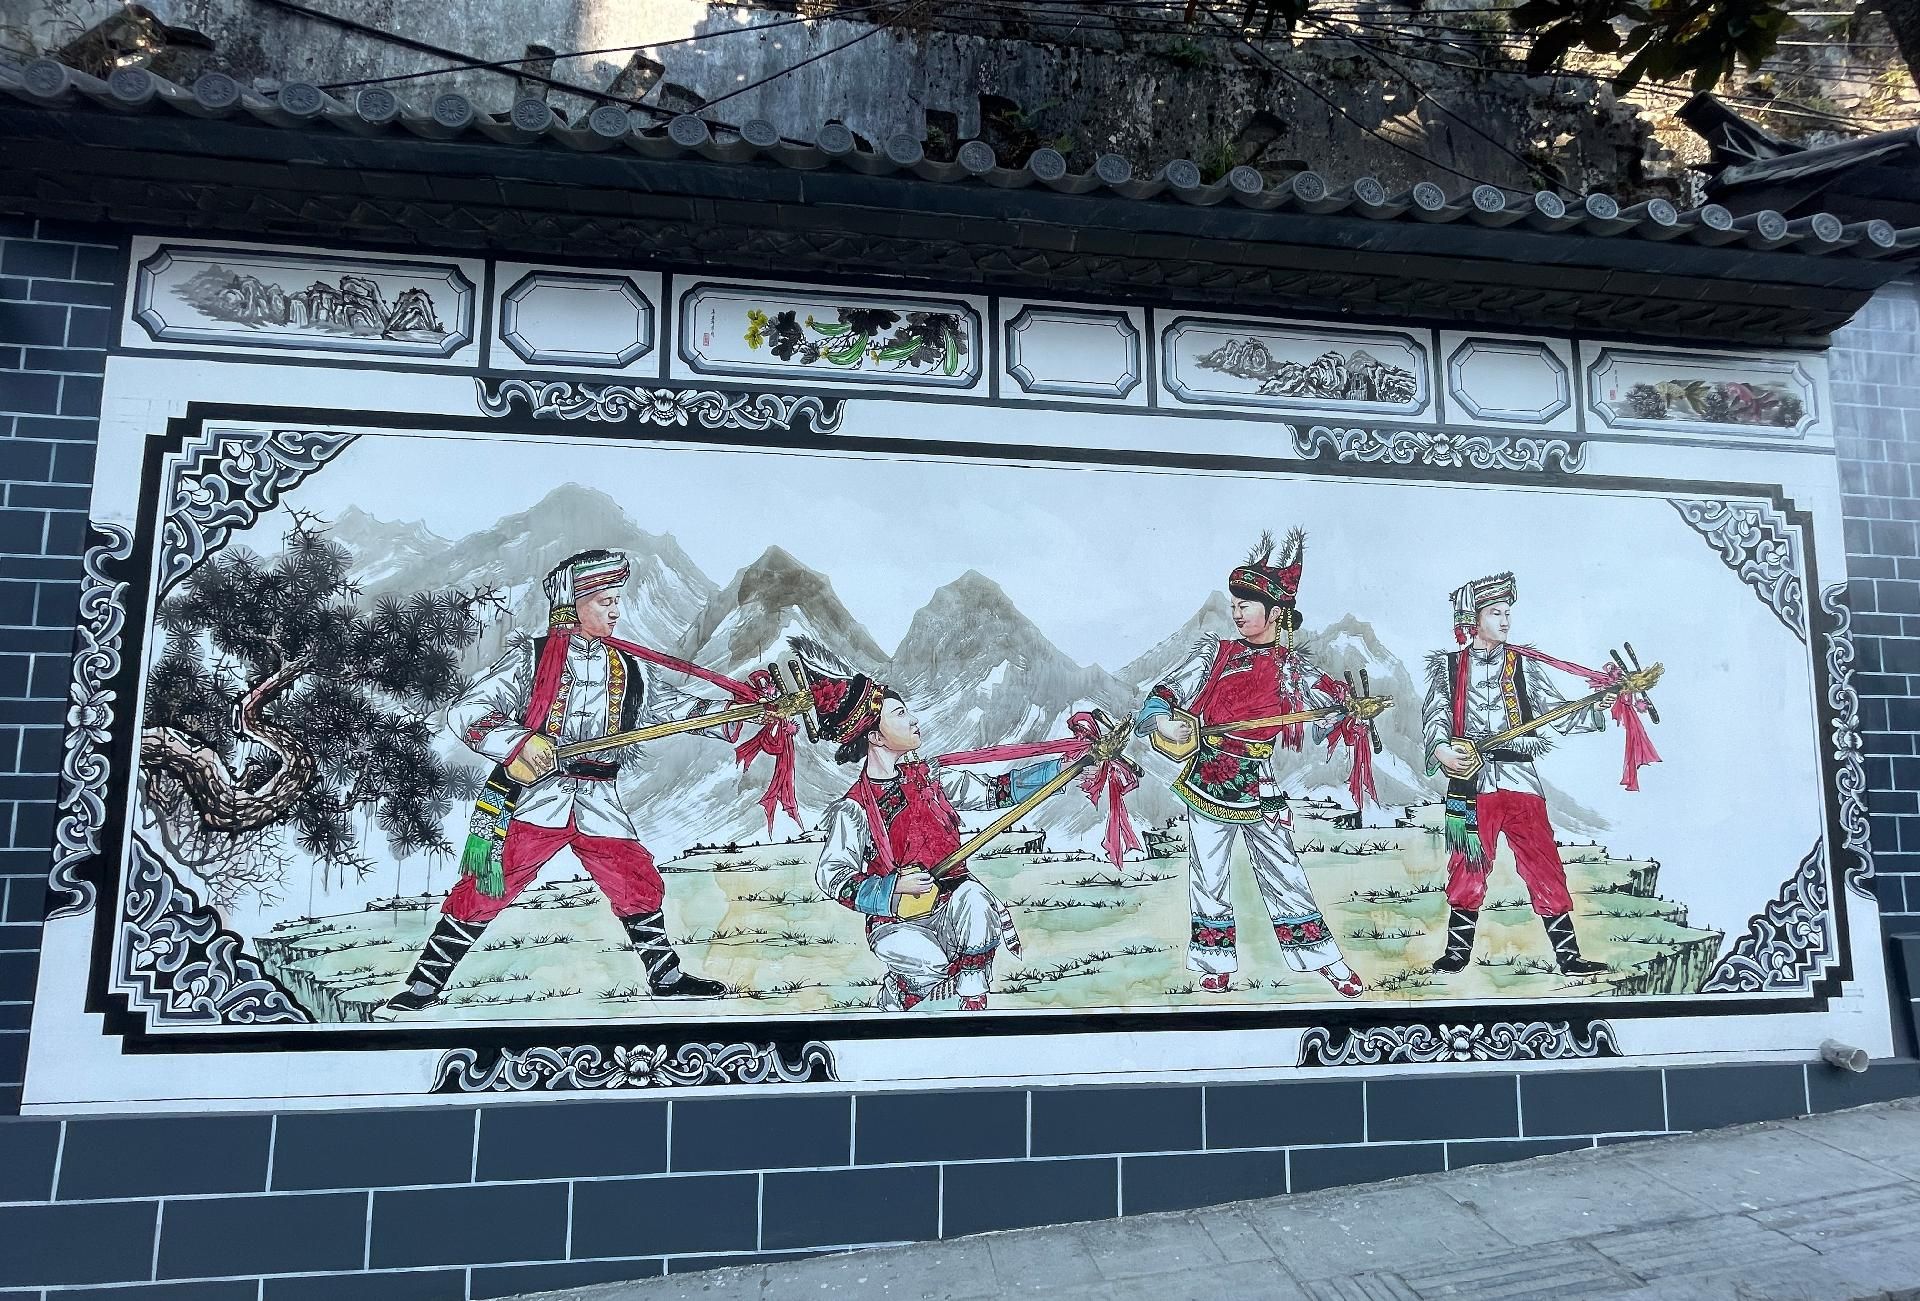 走进鹤峰县铁炉白族乡,一幅幅蕴含白族文化特色的彩色墙体画映入眼帘